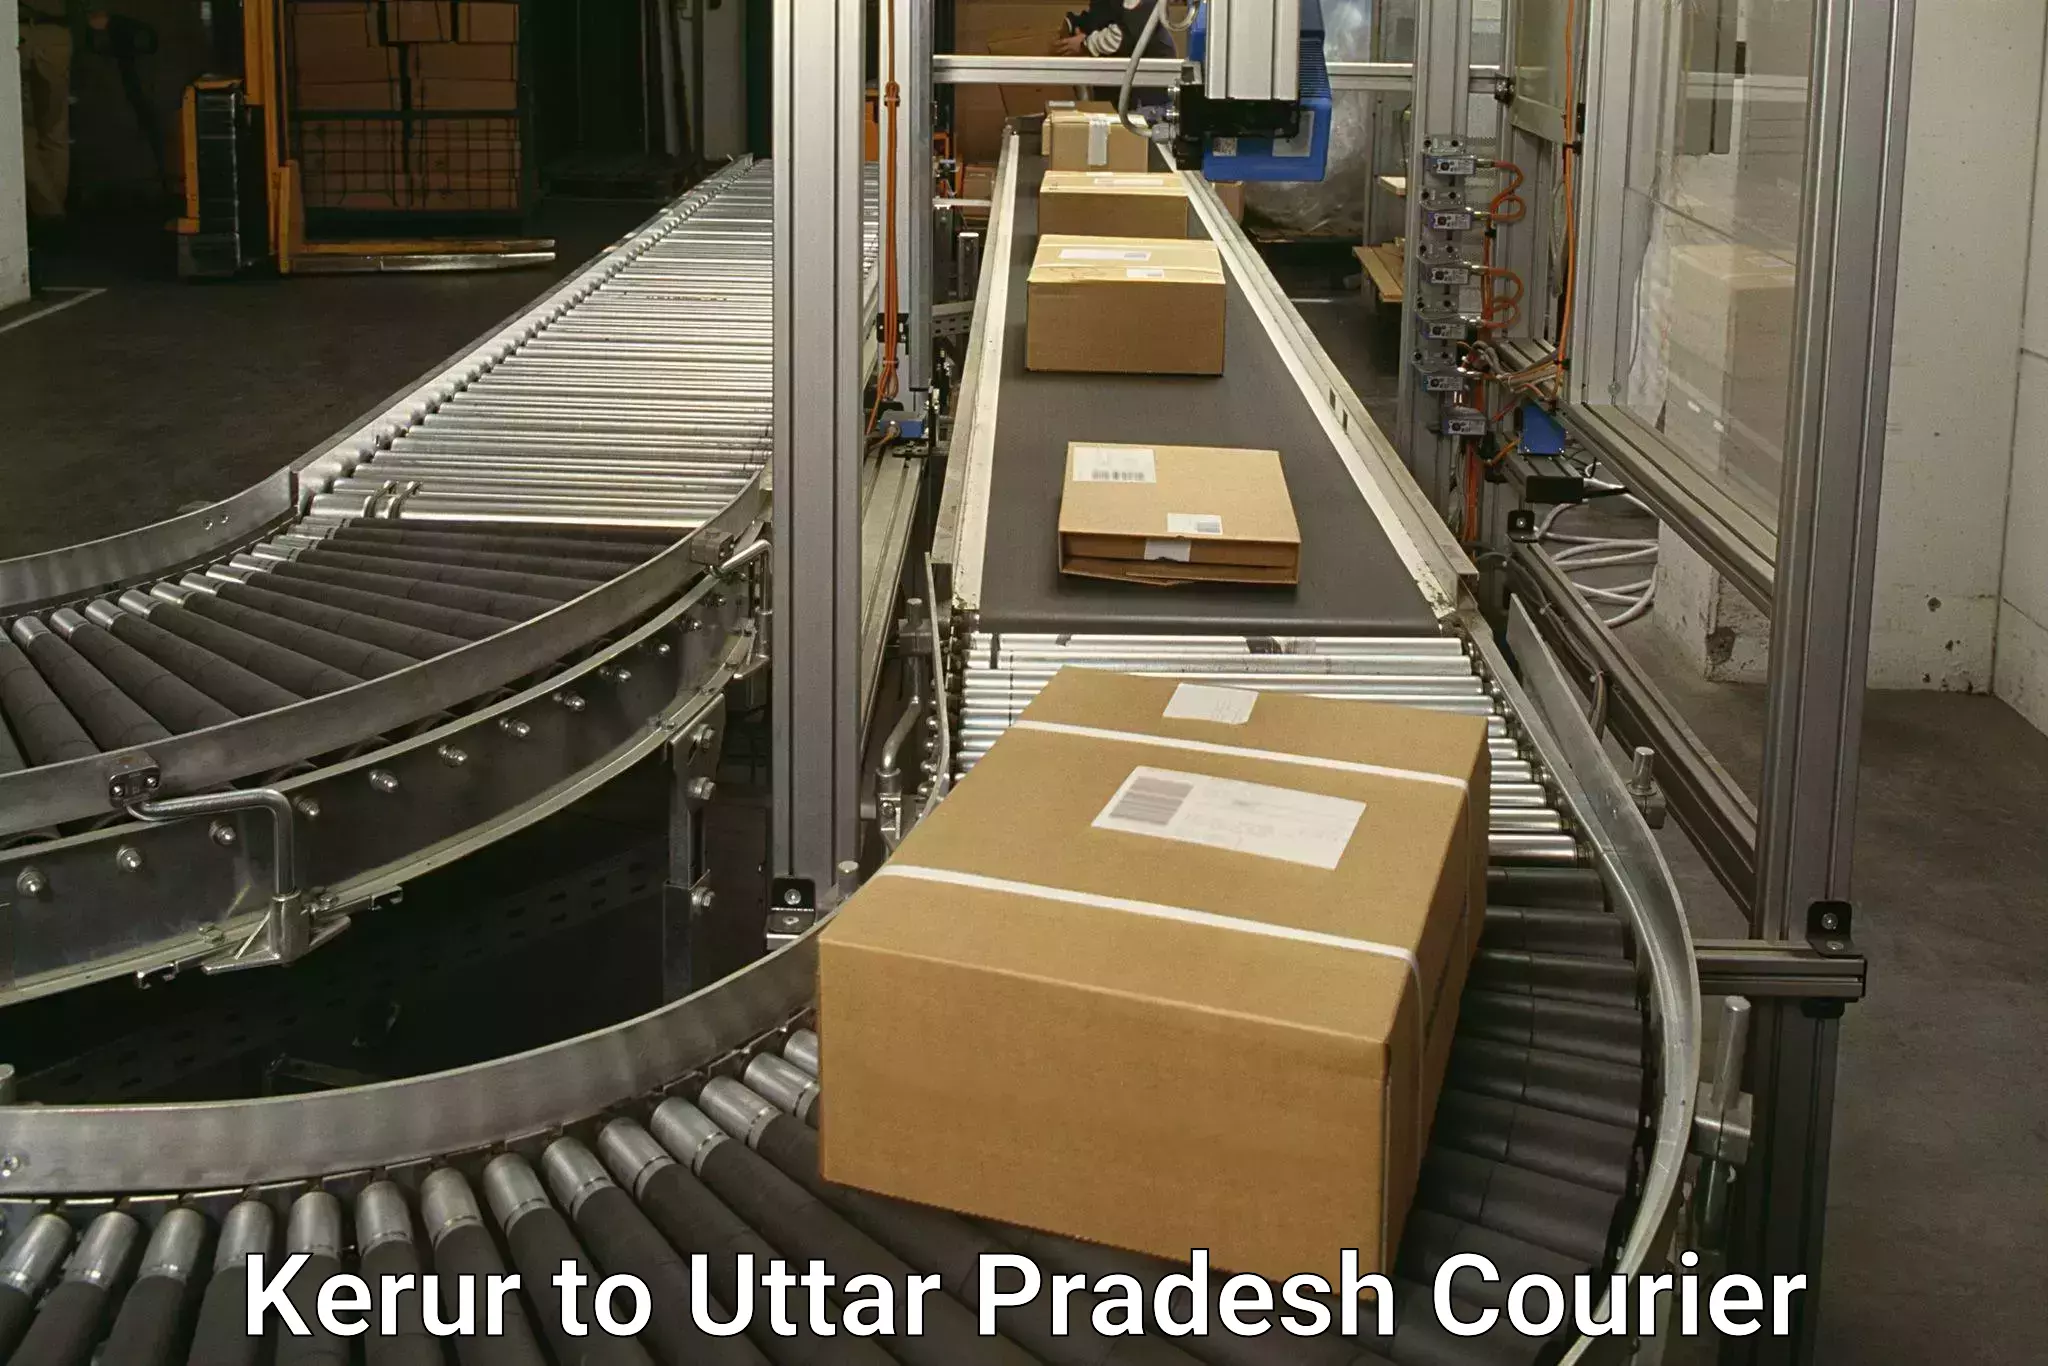 Reliable parcel services Kerur to Katghar Lalganj